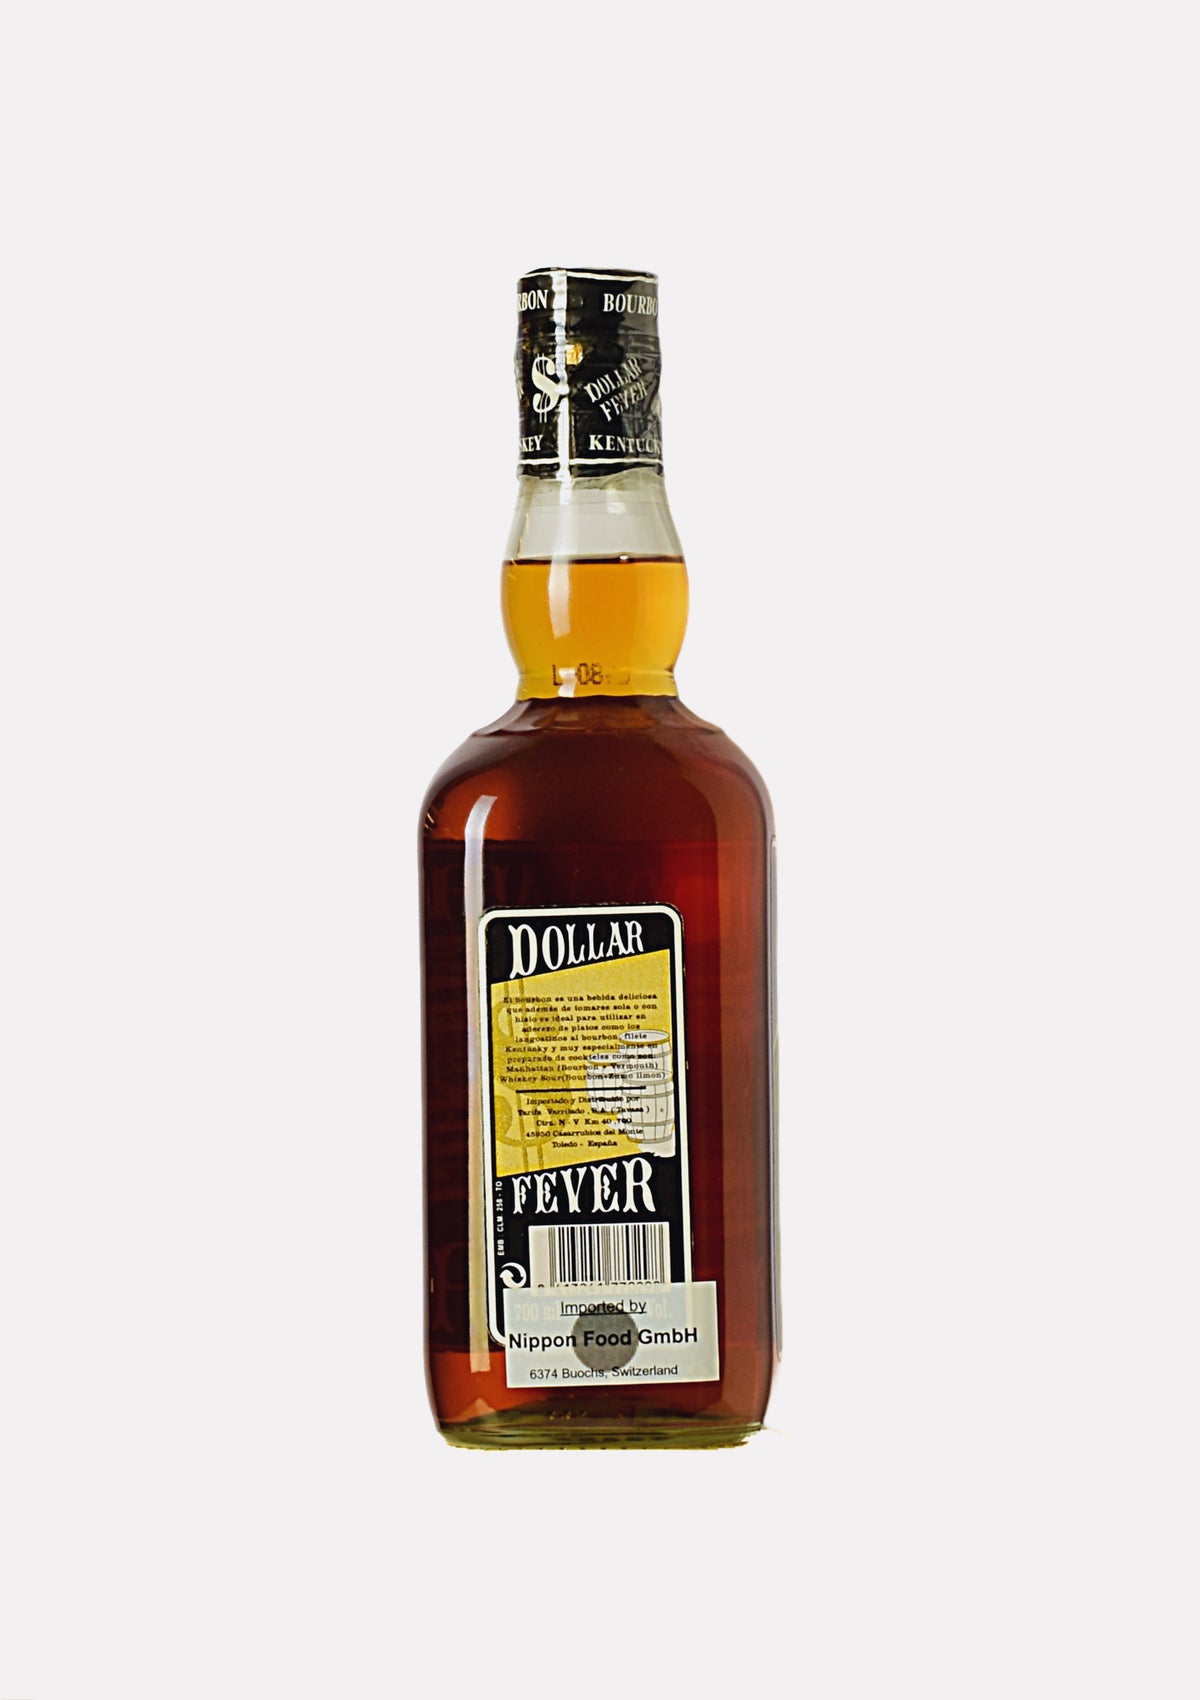 Dollar Fever Kentucky Straight Bourbon Whiskey